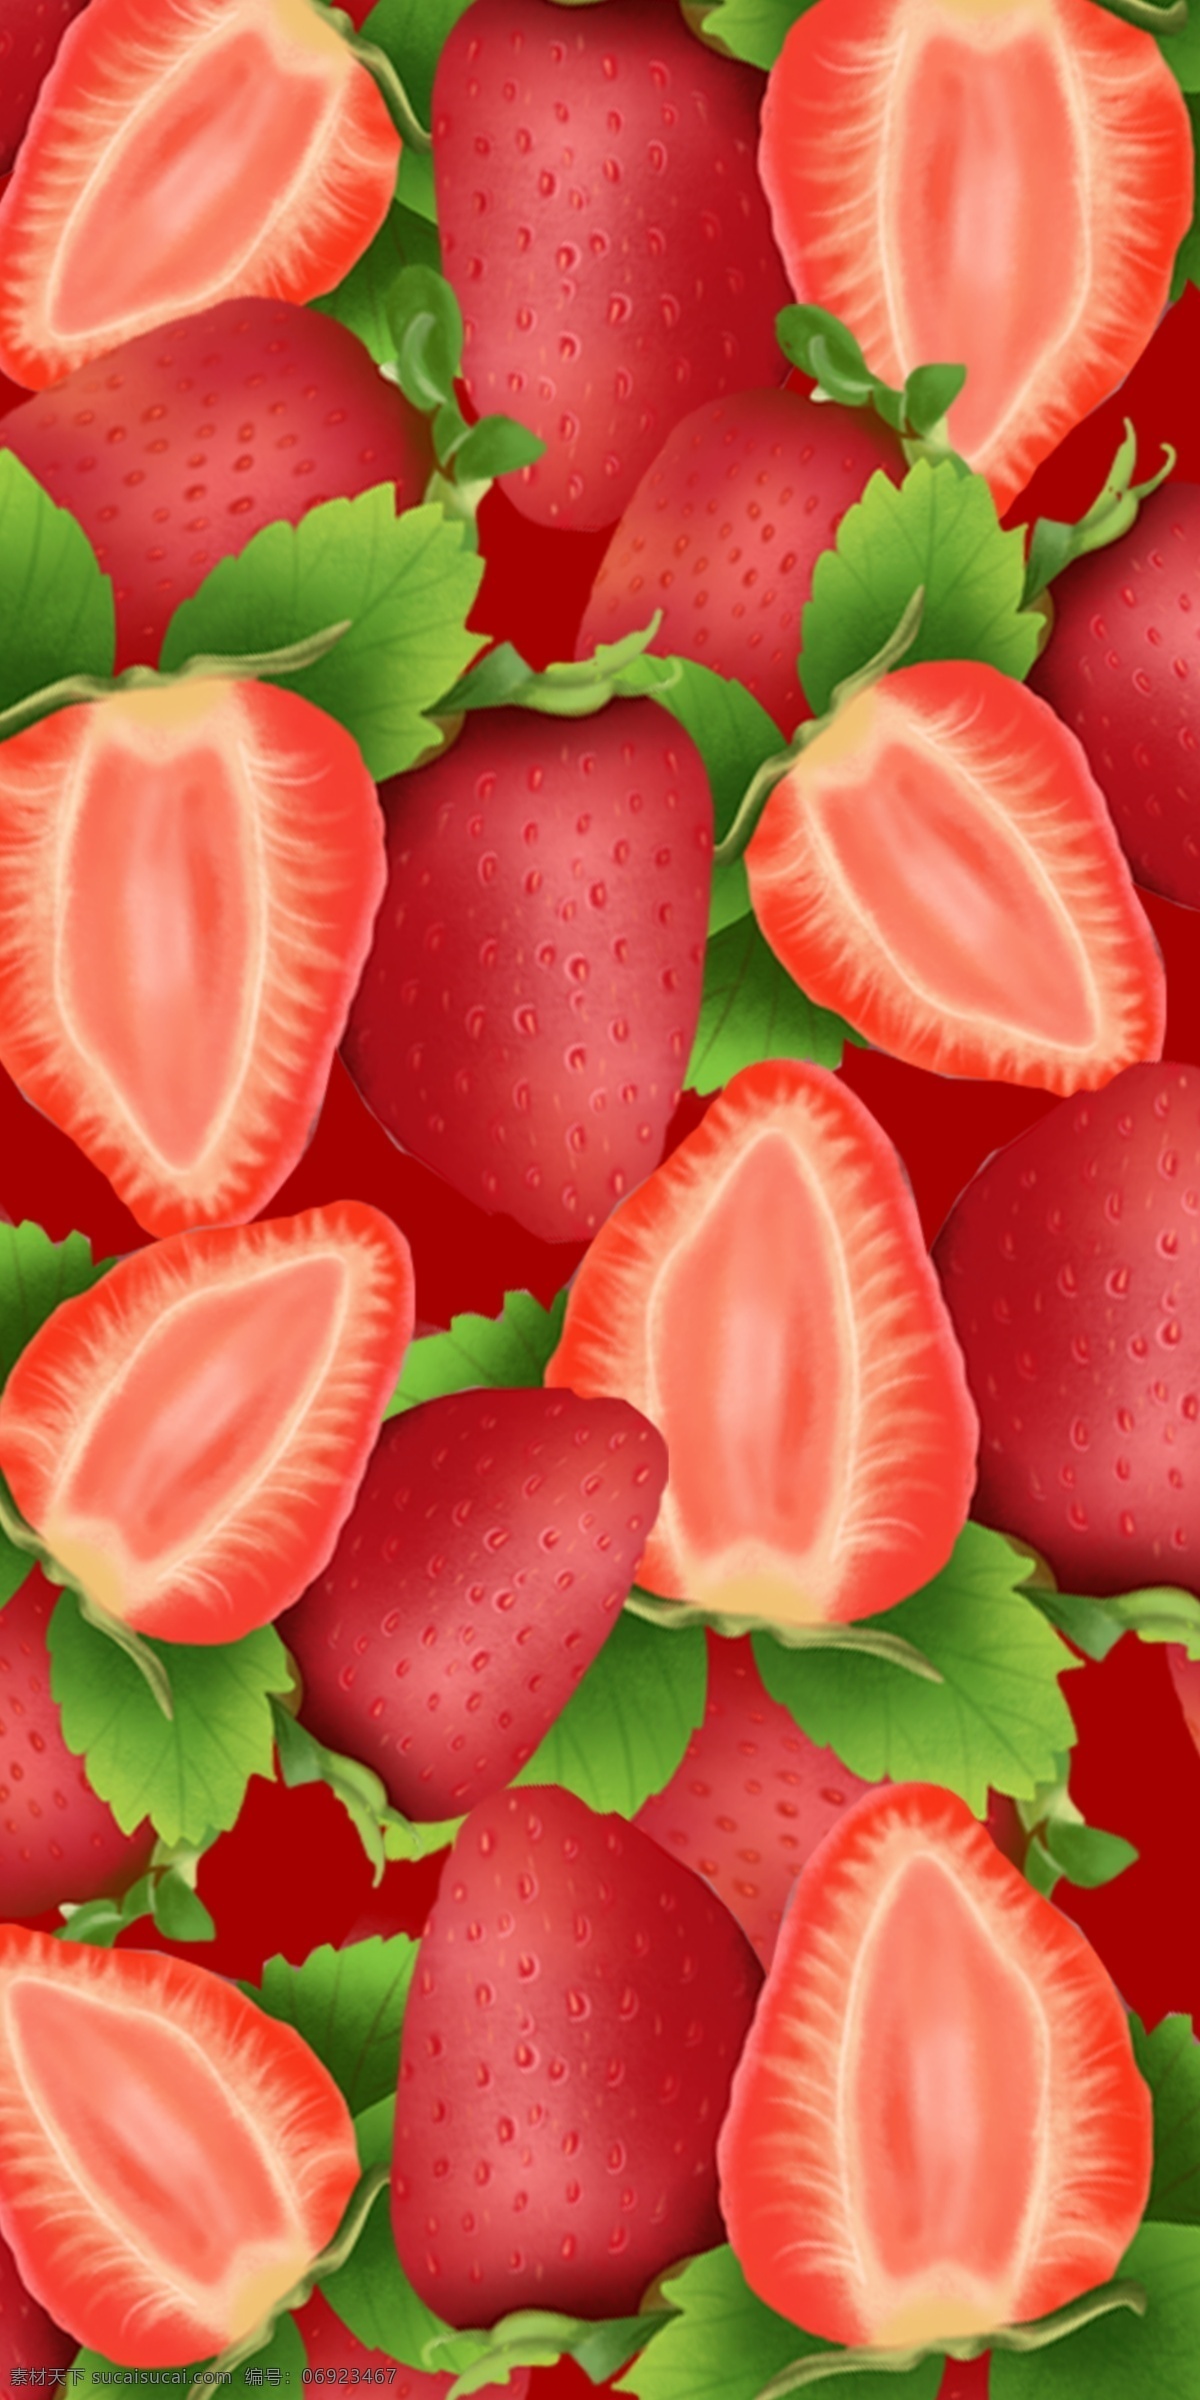 个性 创意 水果 草莓 手机壳 红色 电子机械包装